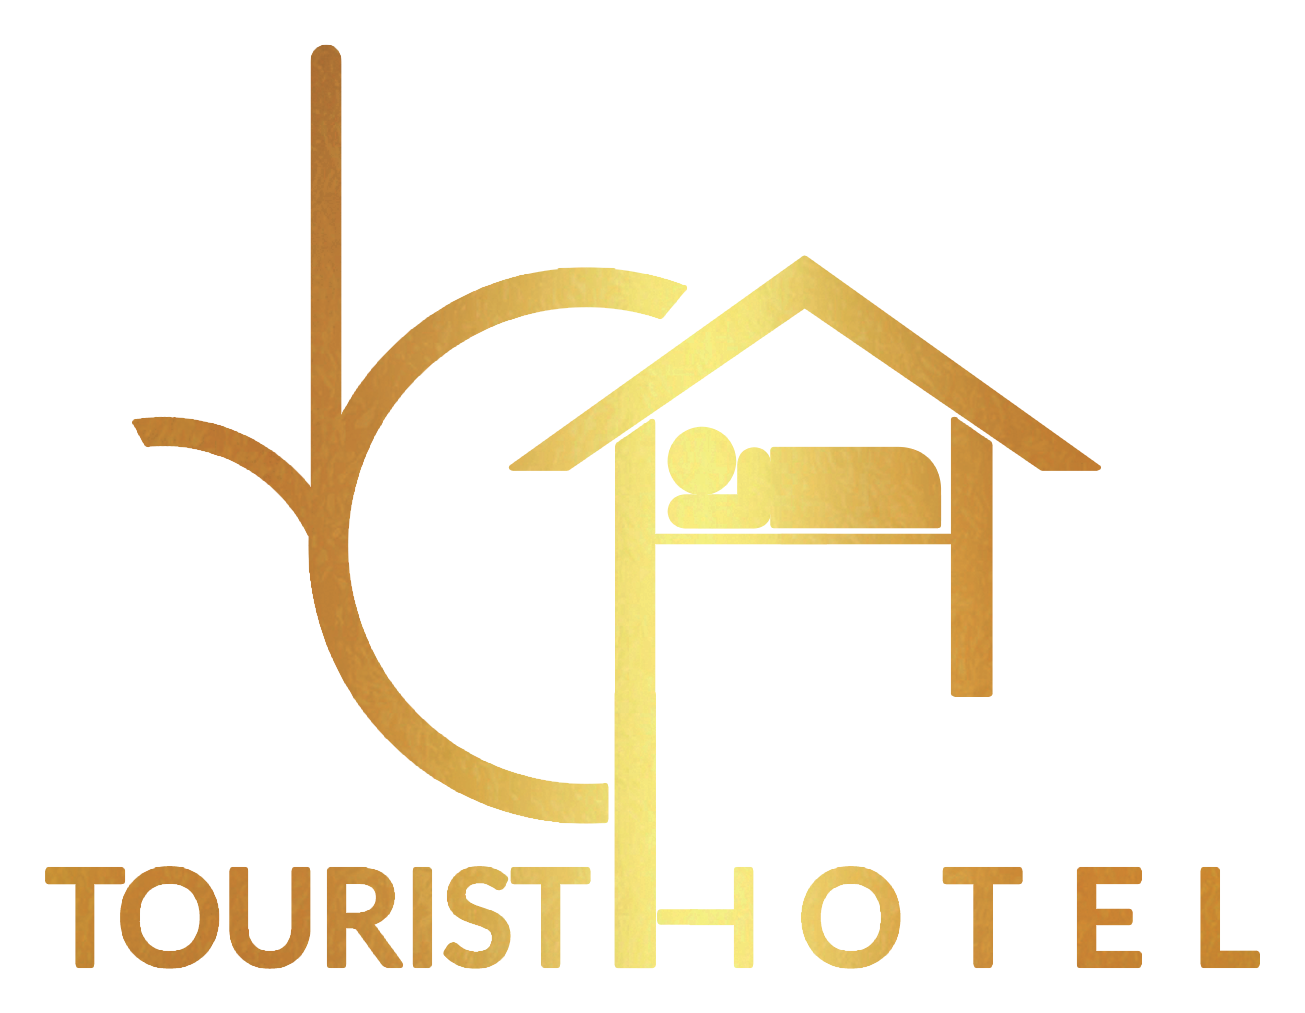 افضل فندق بوسط البلد - ارخص فندق في القاهرة - اماكن للمبيت في القاهرة